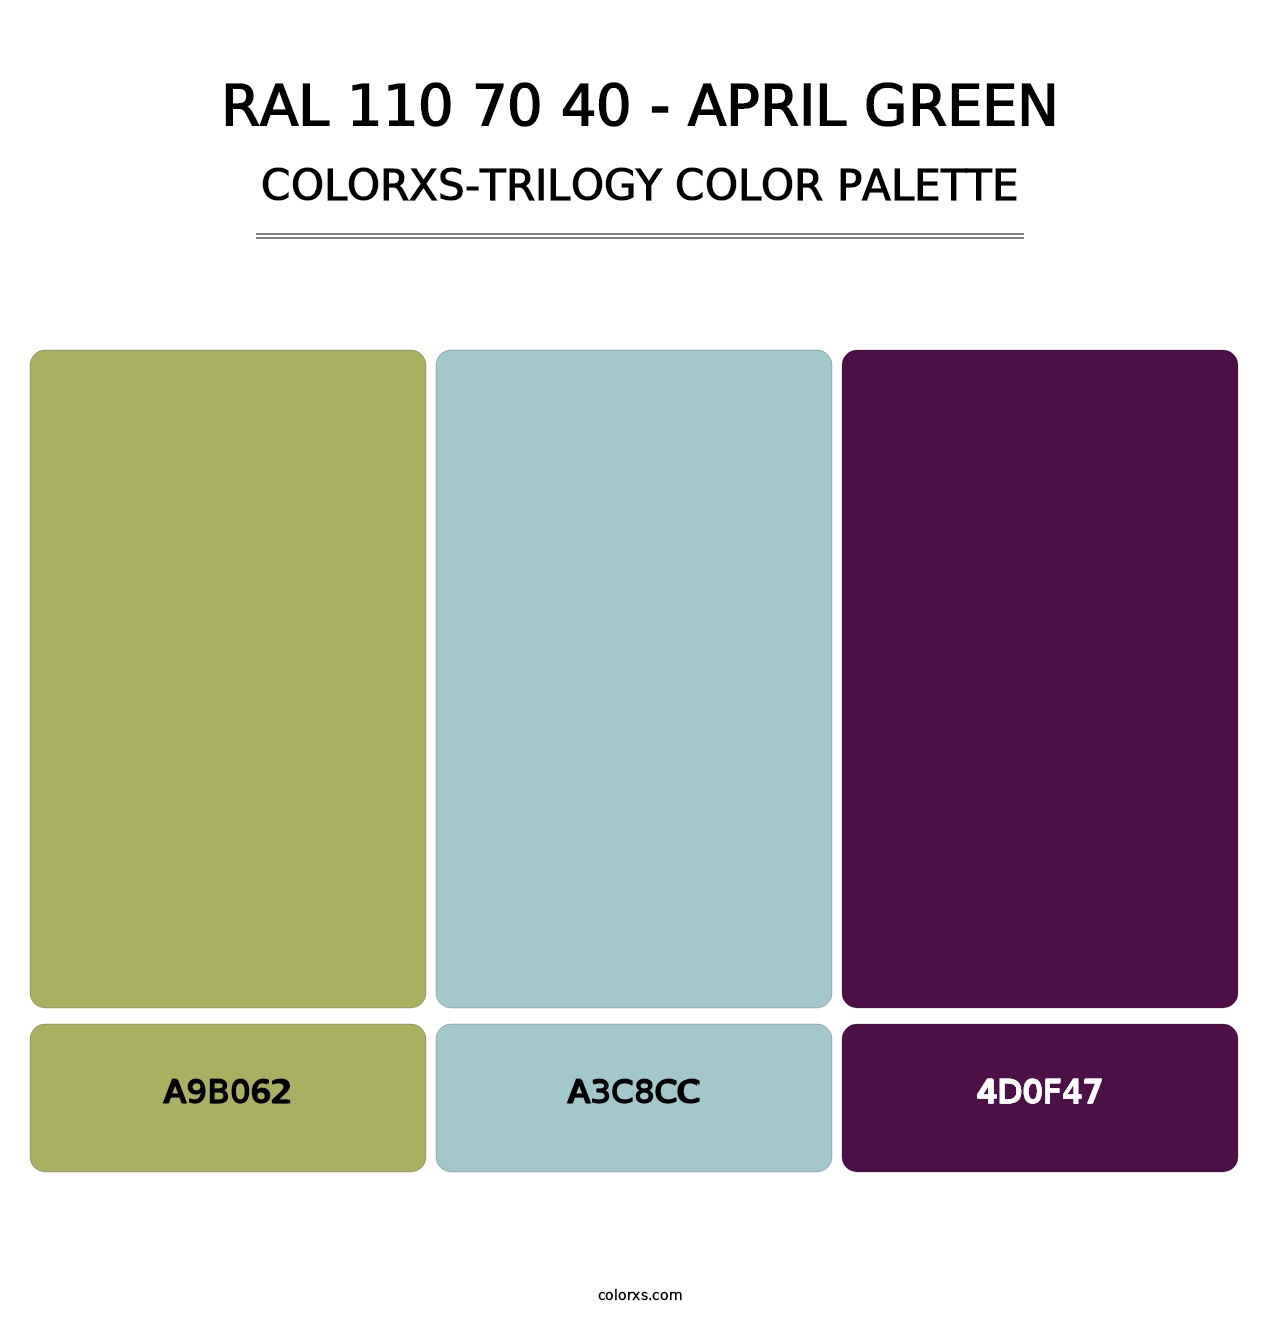 RAL 110 70 40 - April Green - Colorxs Trilogy Palette